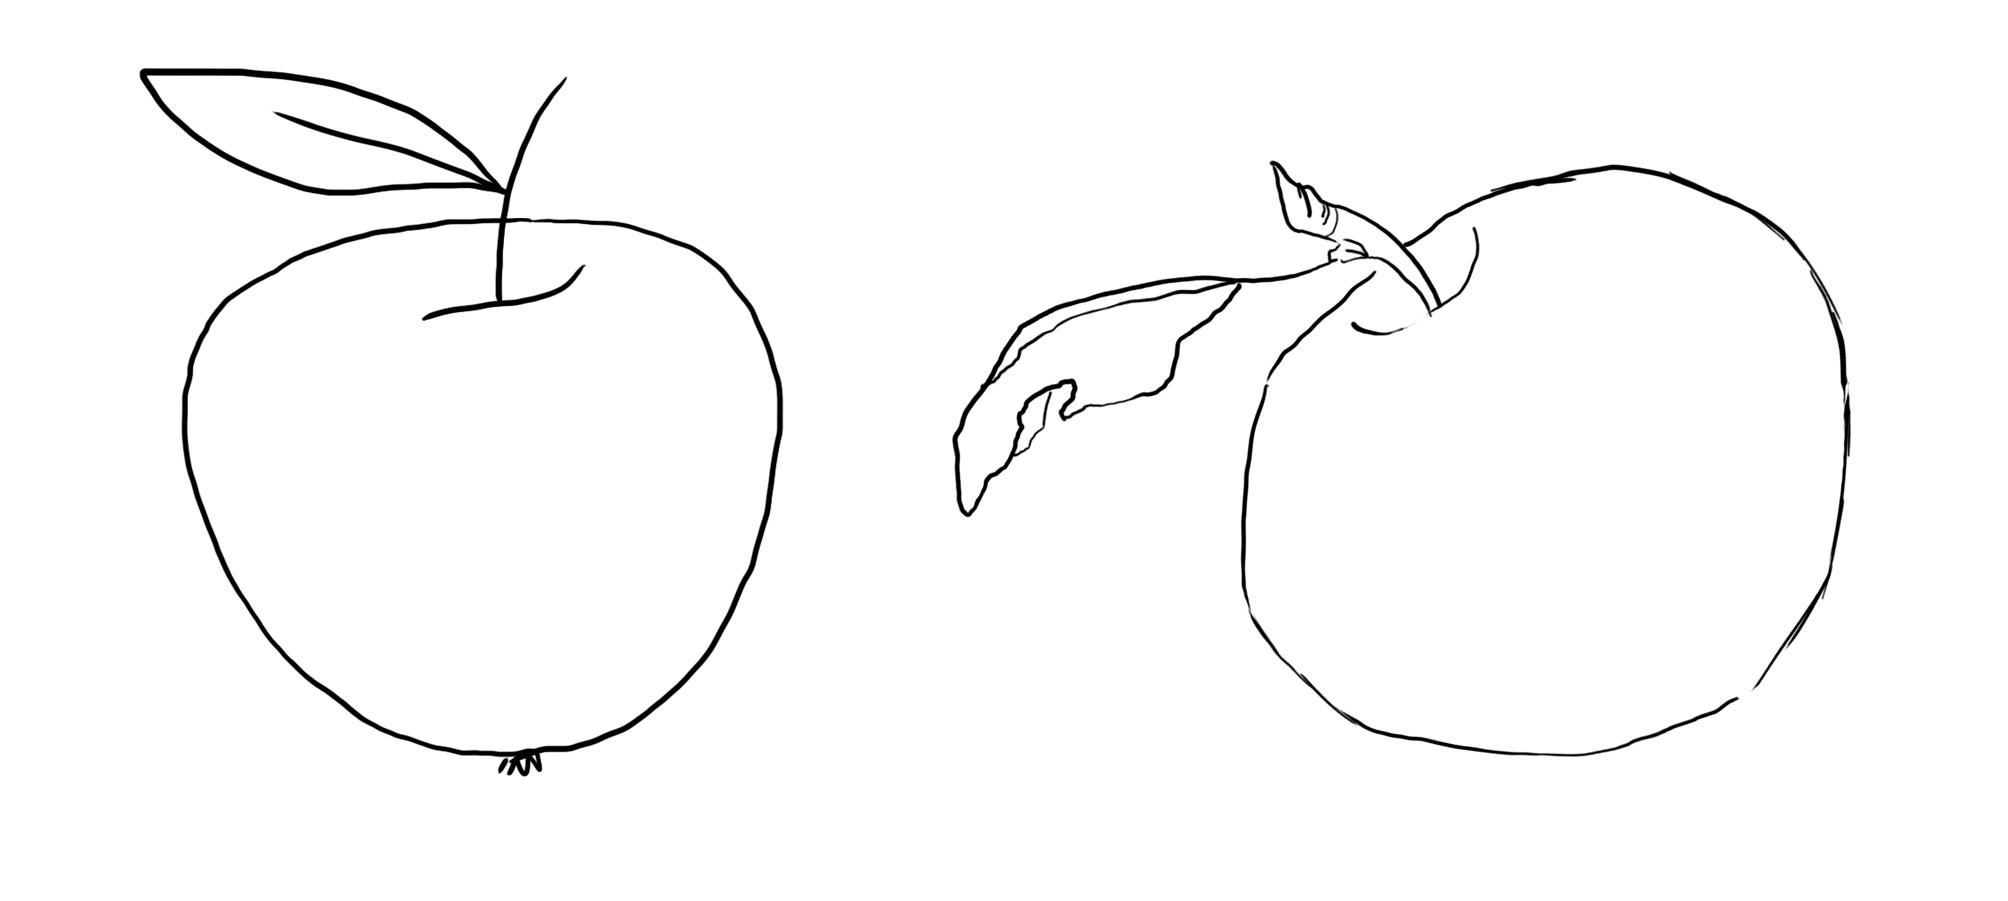 Рисунок яблока